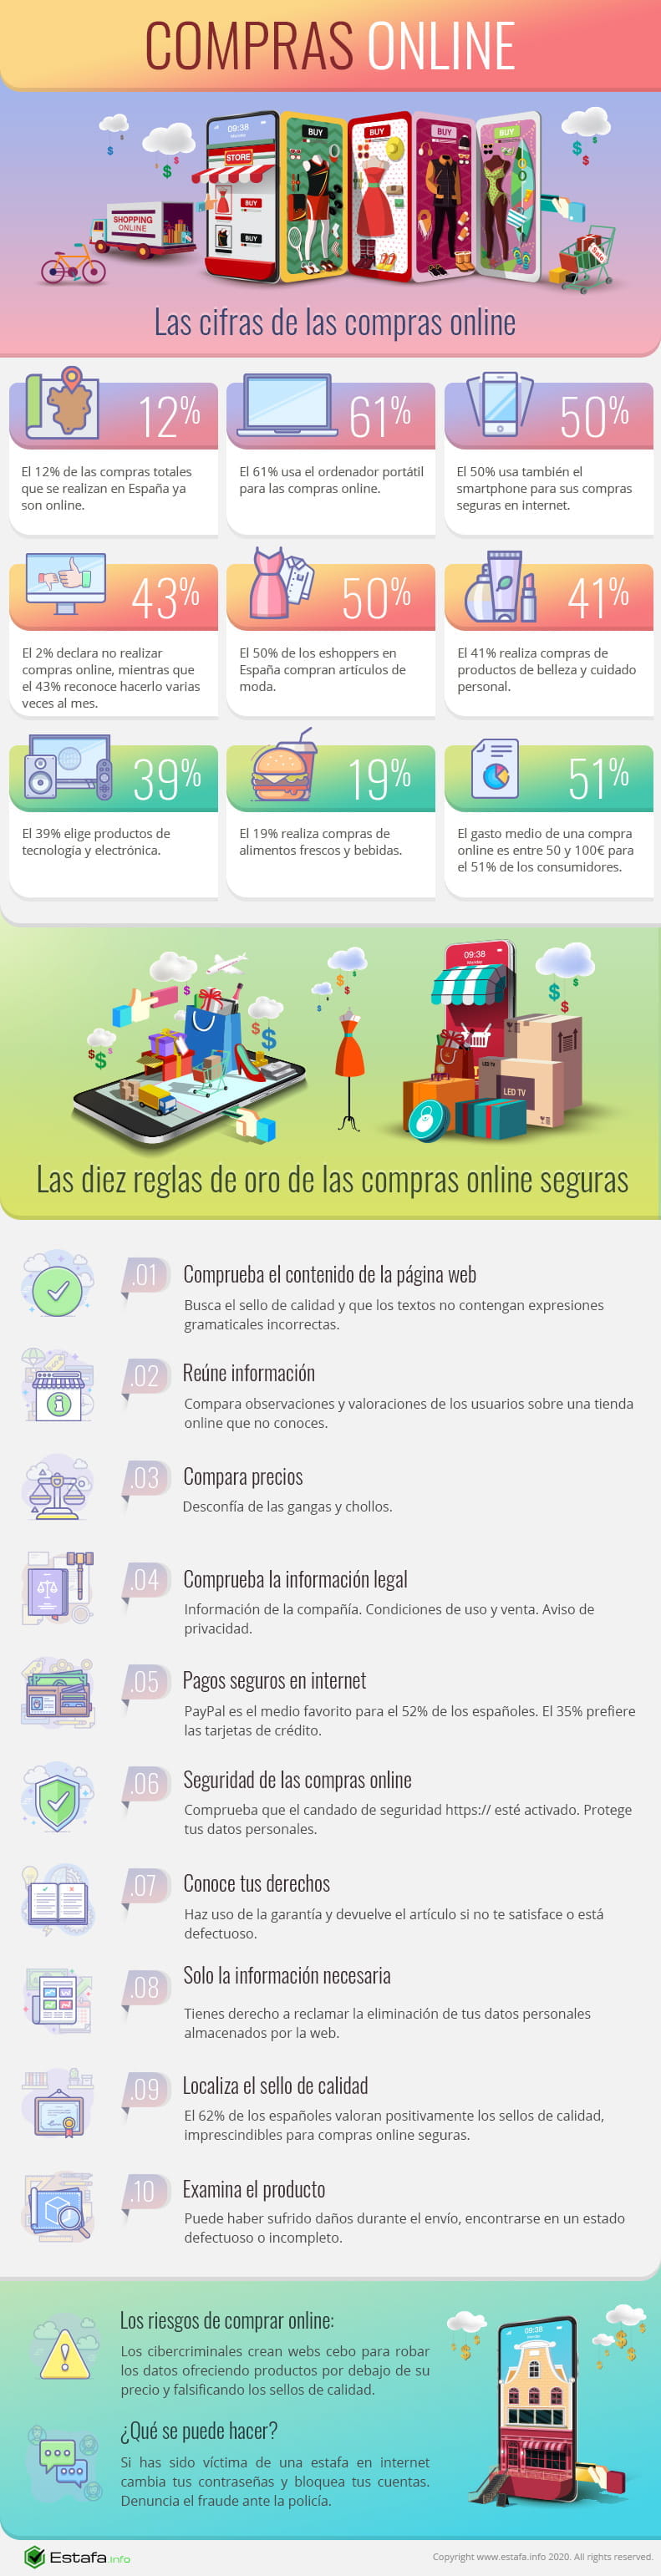 Infografía en la que se muestran varios datos sobre las compras online y diez reglas para comprar de forma segura por internet.